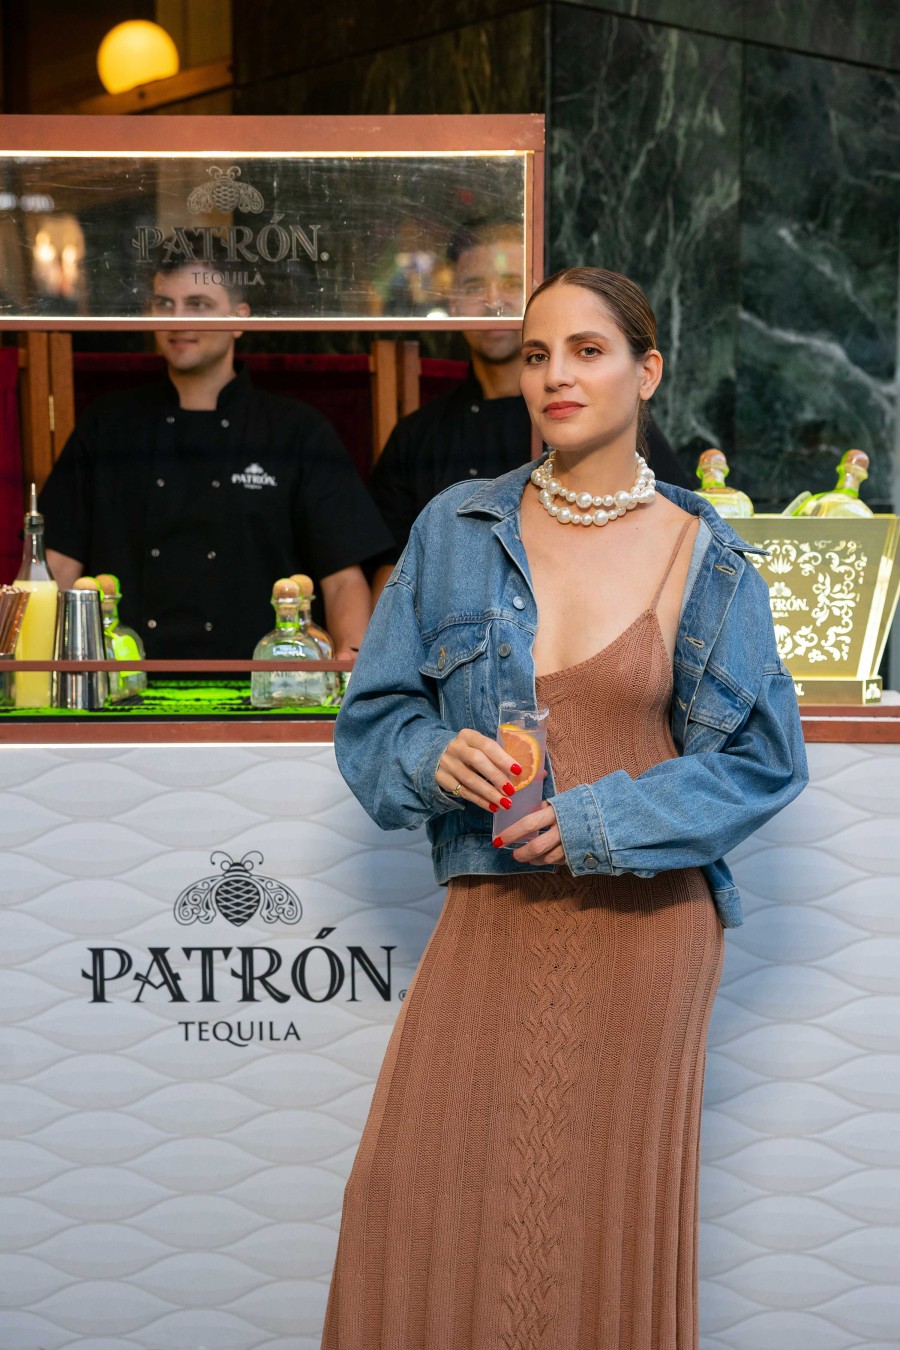 Ένα άκρως καλοκαιρινό ραντεβού στο Athénée για dinner και Paloma cocktails με Patrón super premium τεκίλα- Φωτογραφία 5